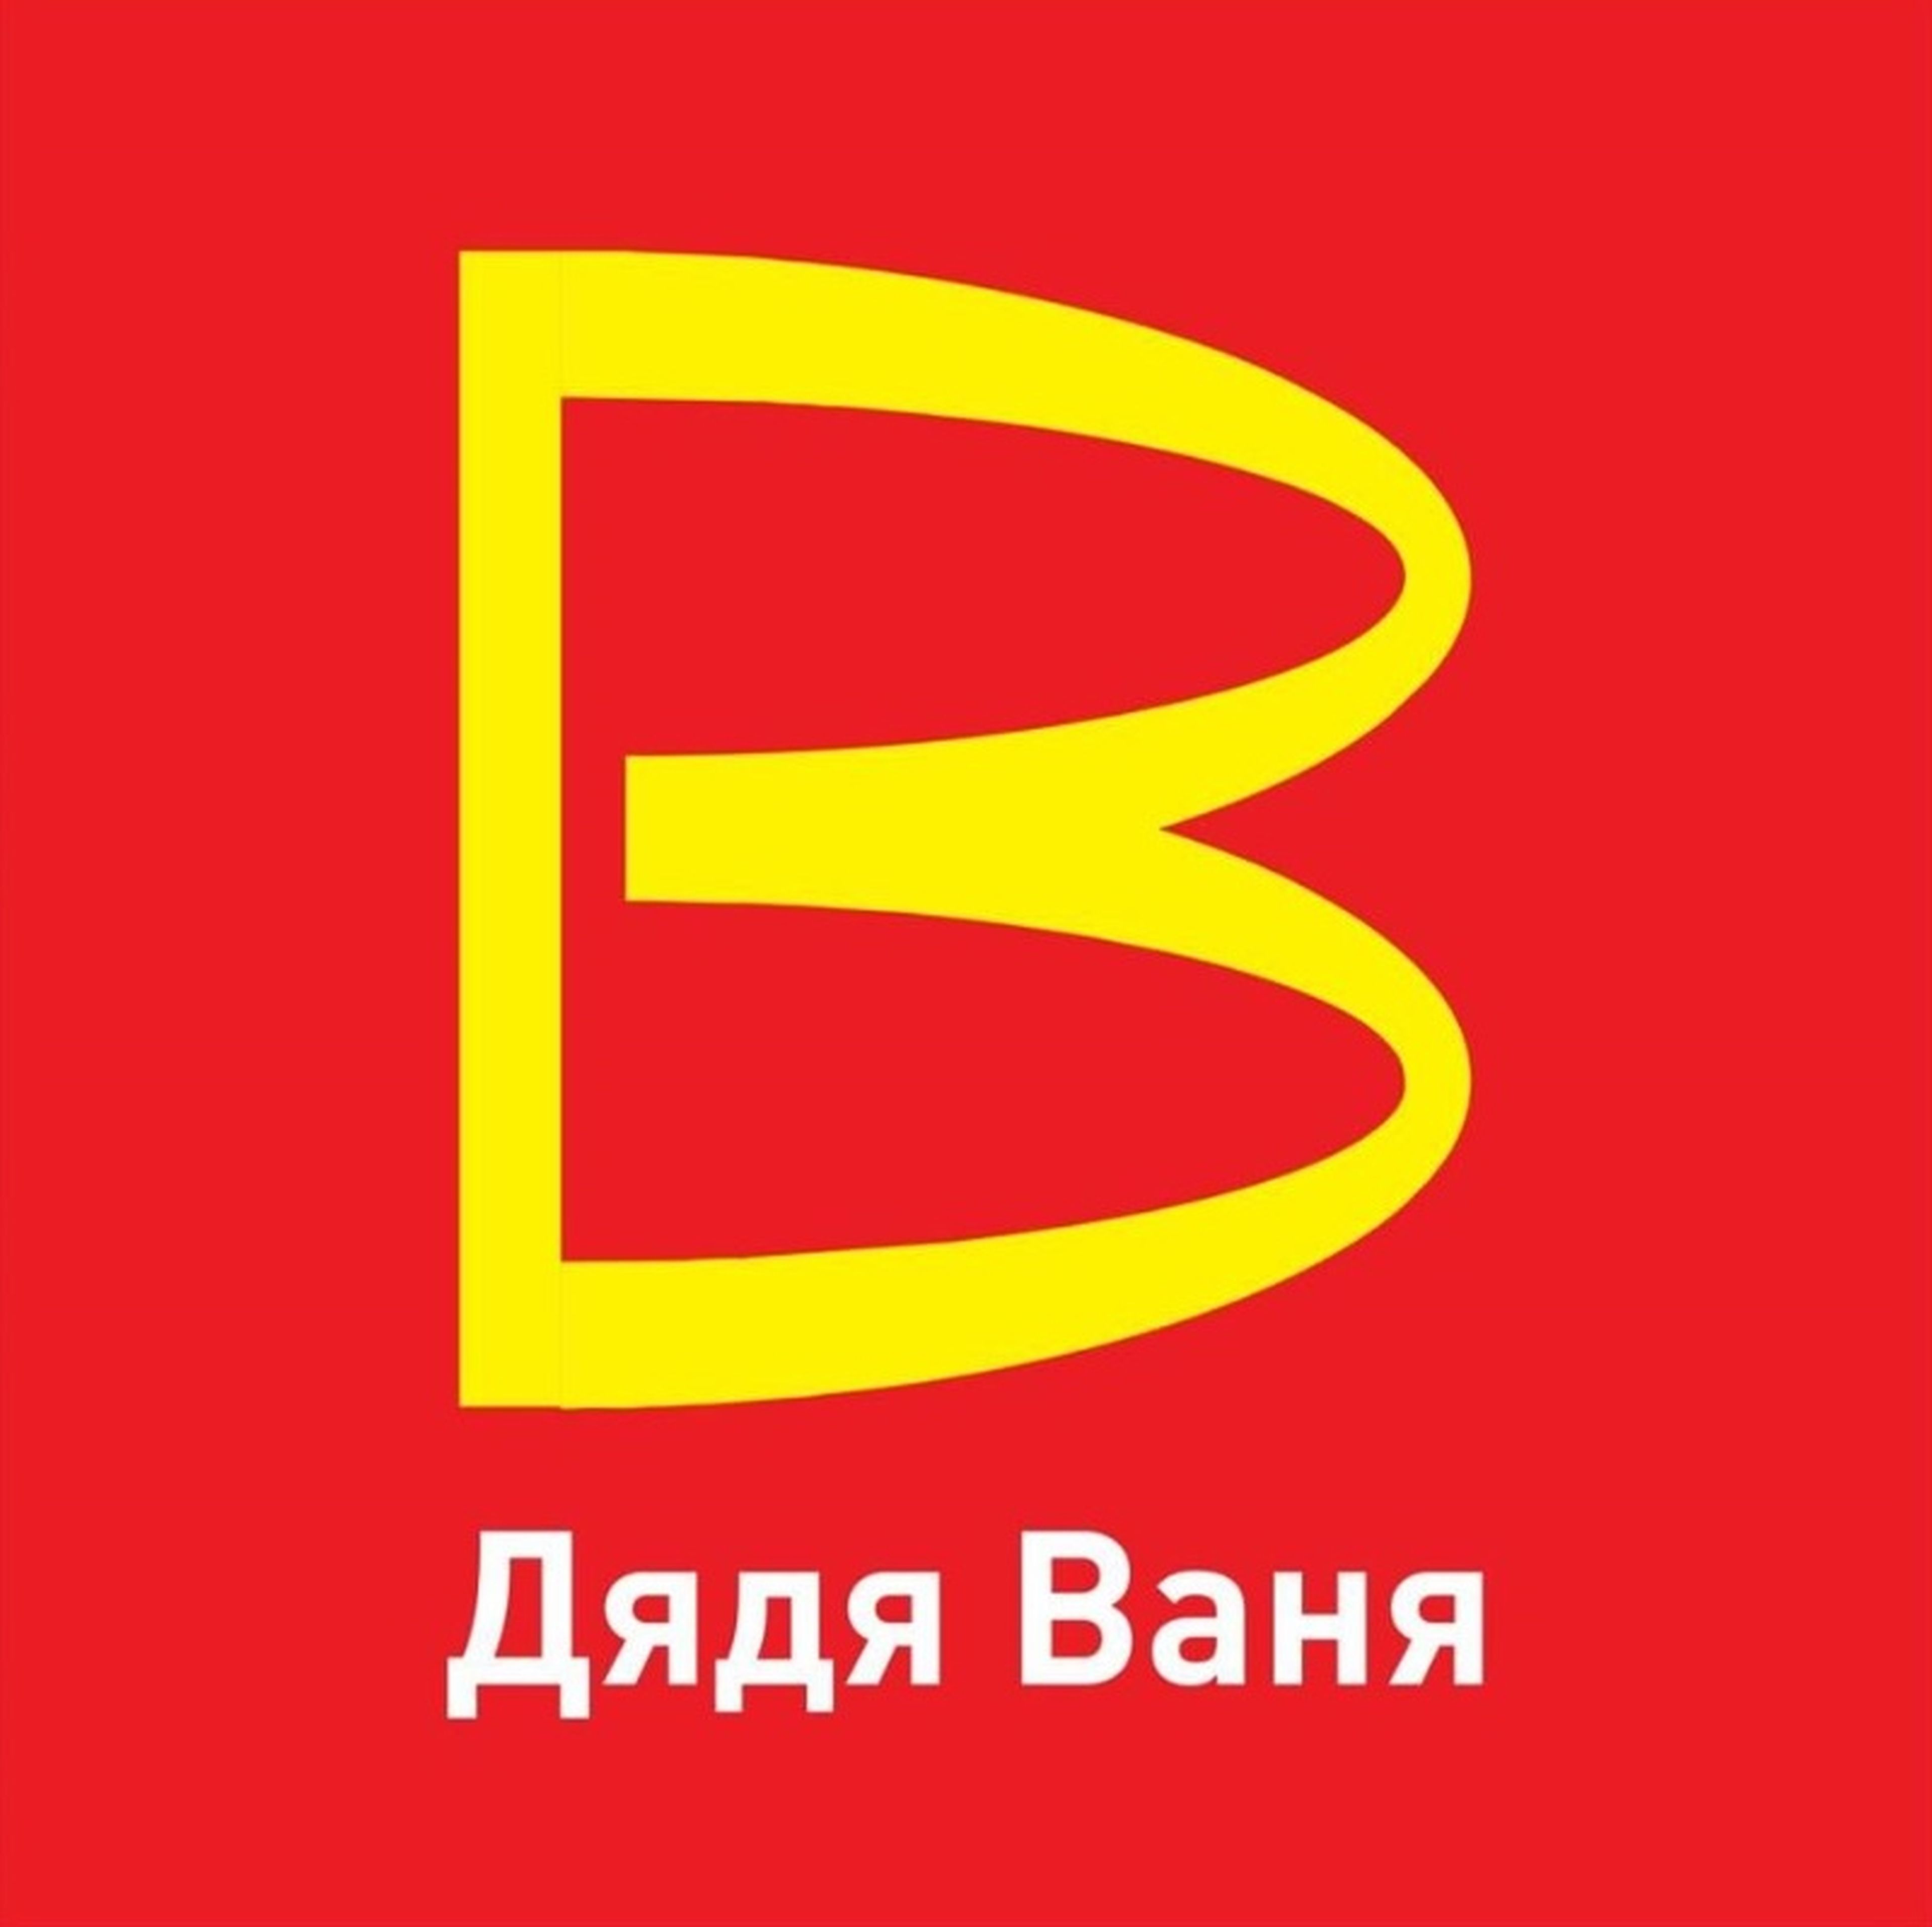 Logotipo para una marca de "Uncle Vanya" que imita el logo de los arcos dorados de McDonald's.